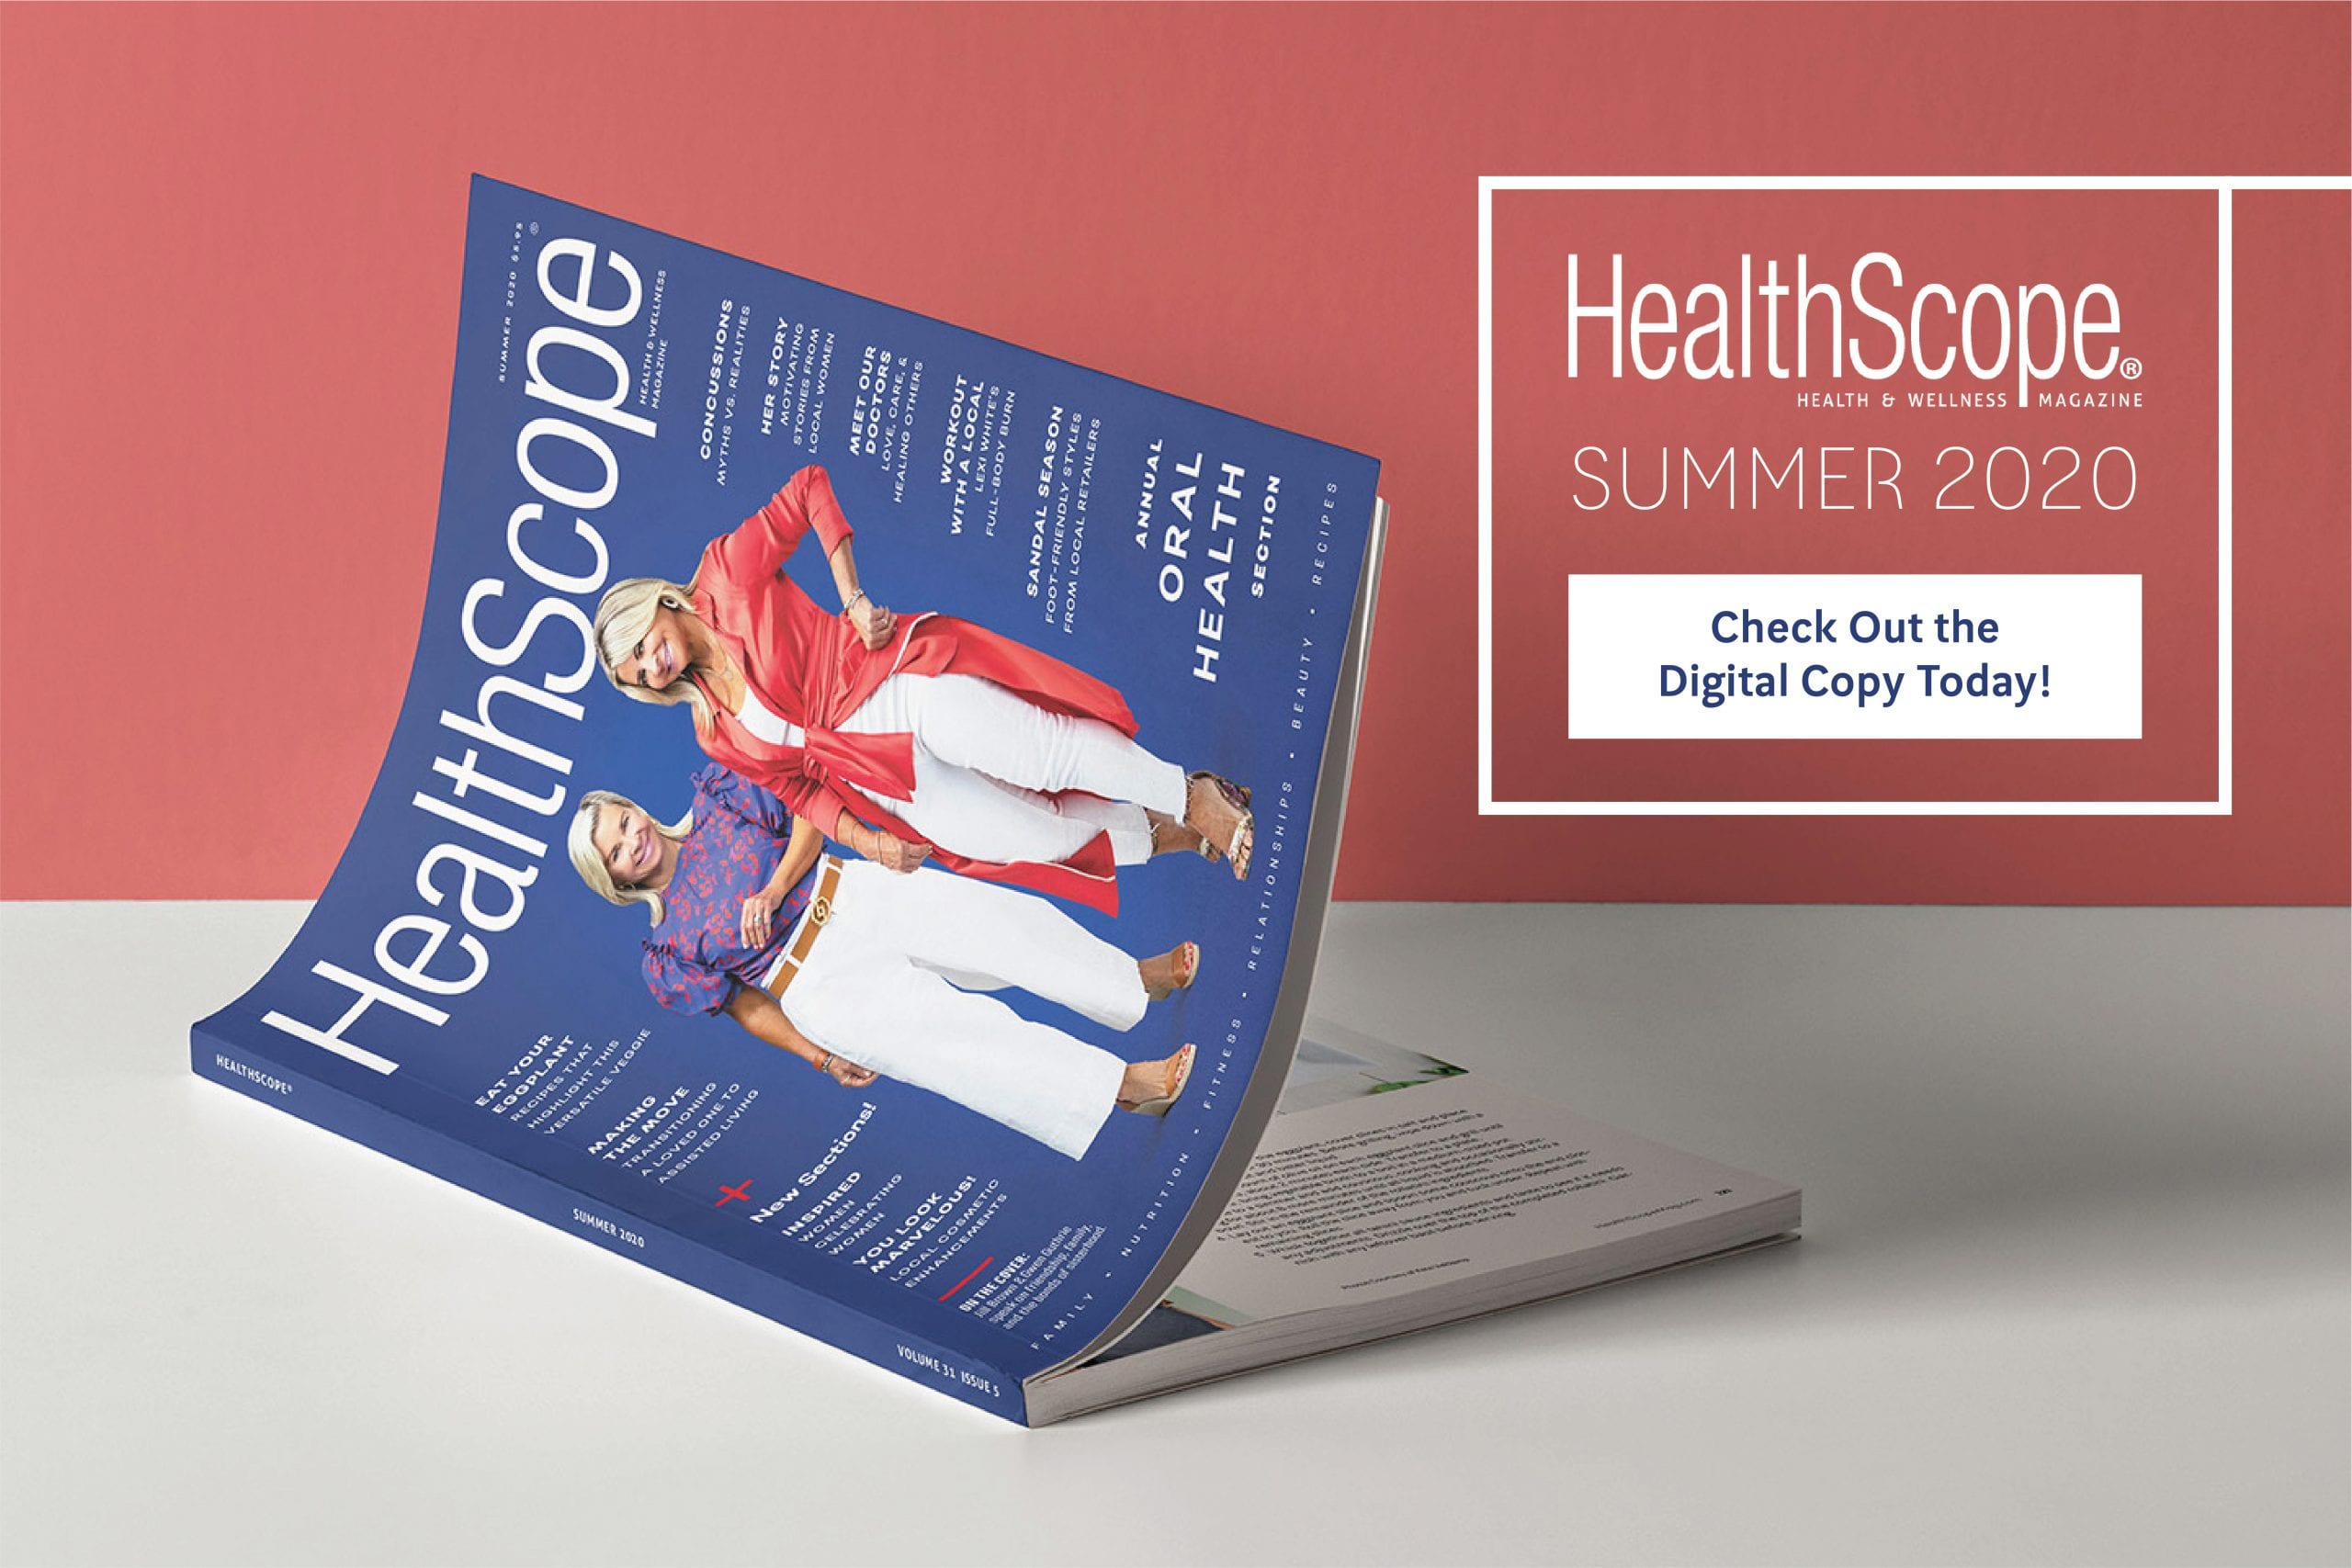 HealthScope Summer 2020 magazine